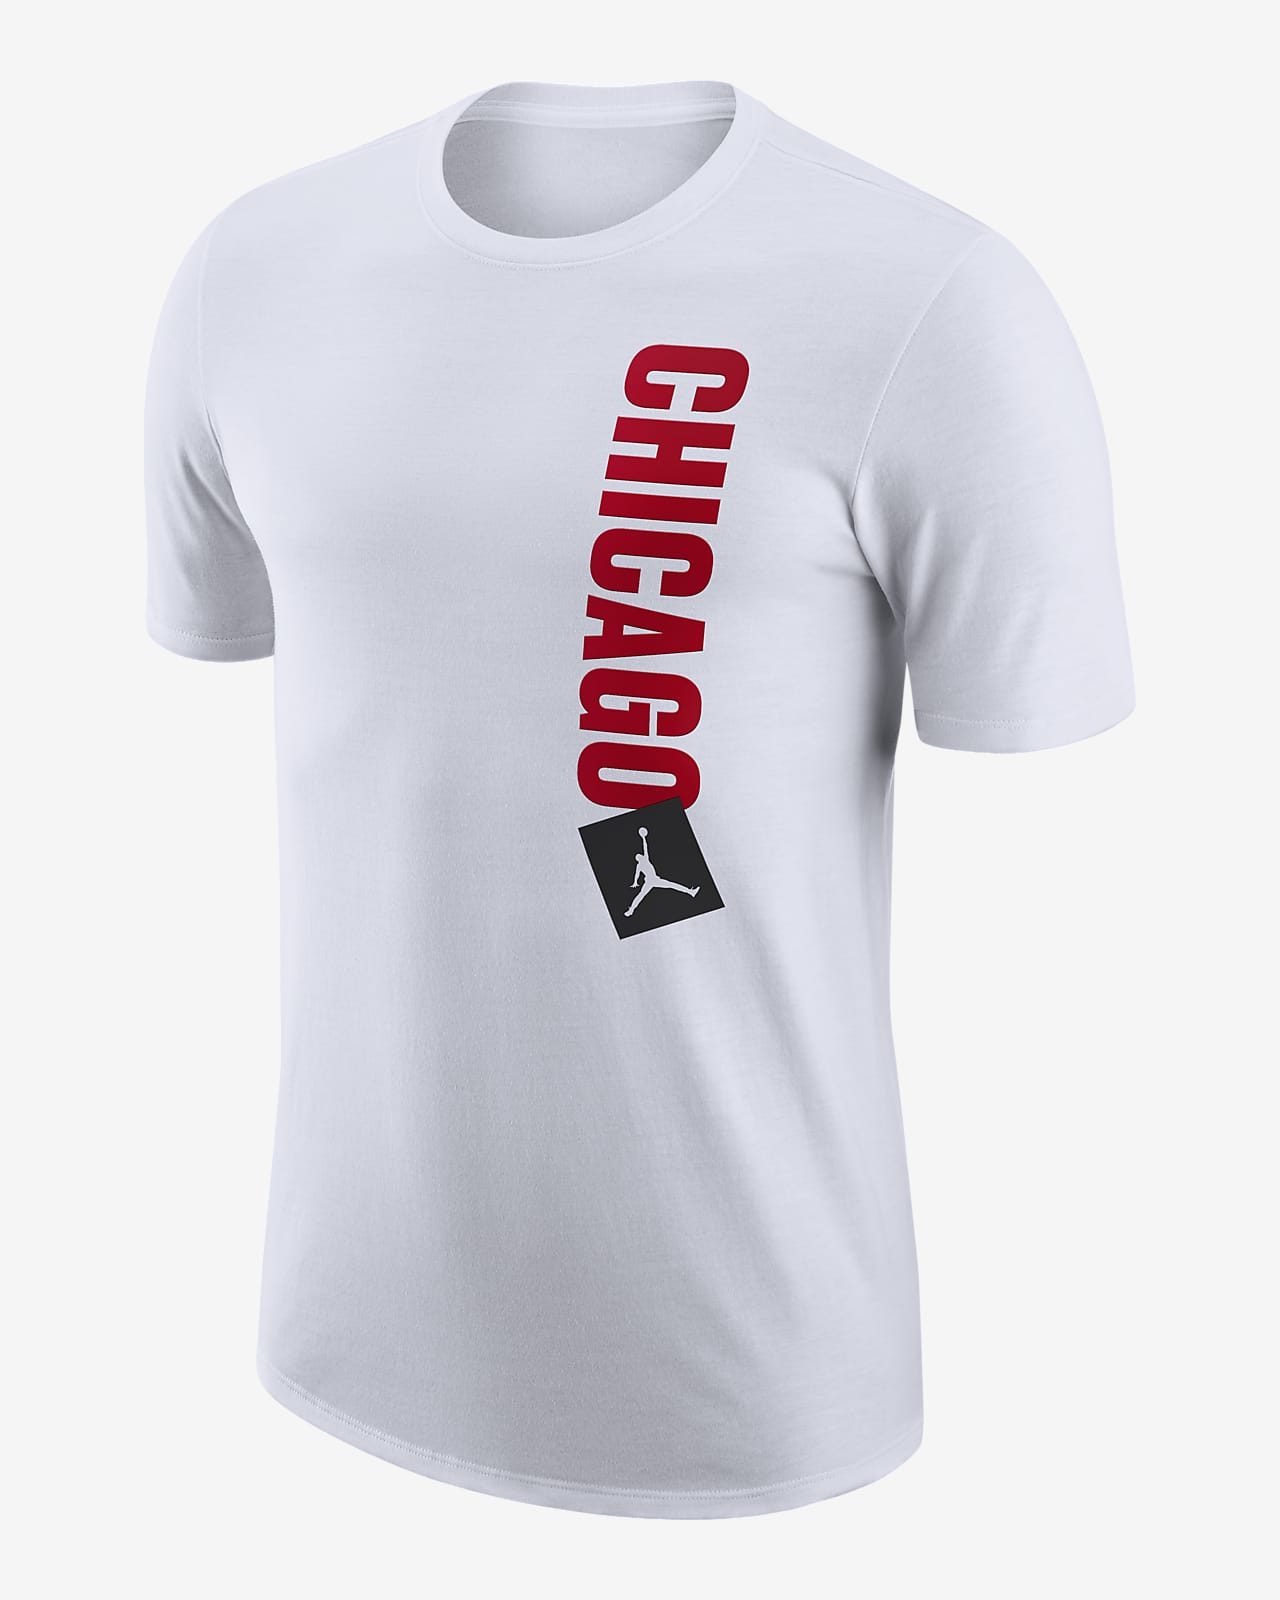 væske Hændelse brysomme Chicago Bulls Essential Statement Edition Men's Jordan NBA T-Shirt. Nike LU